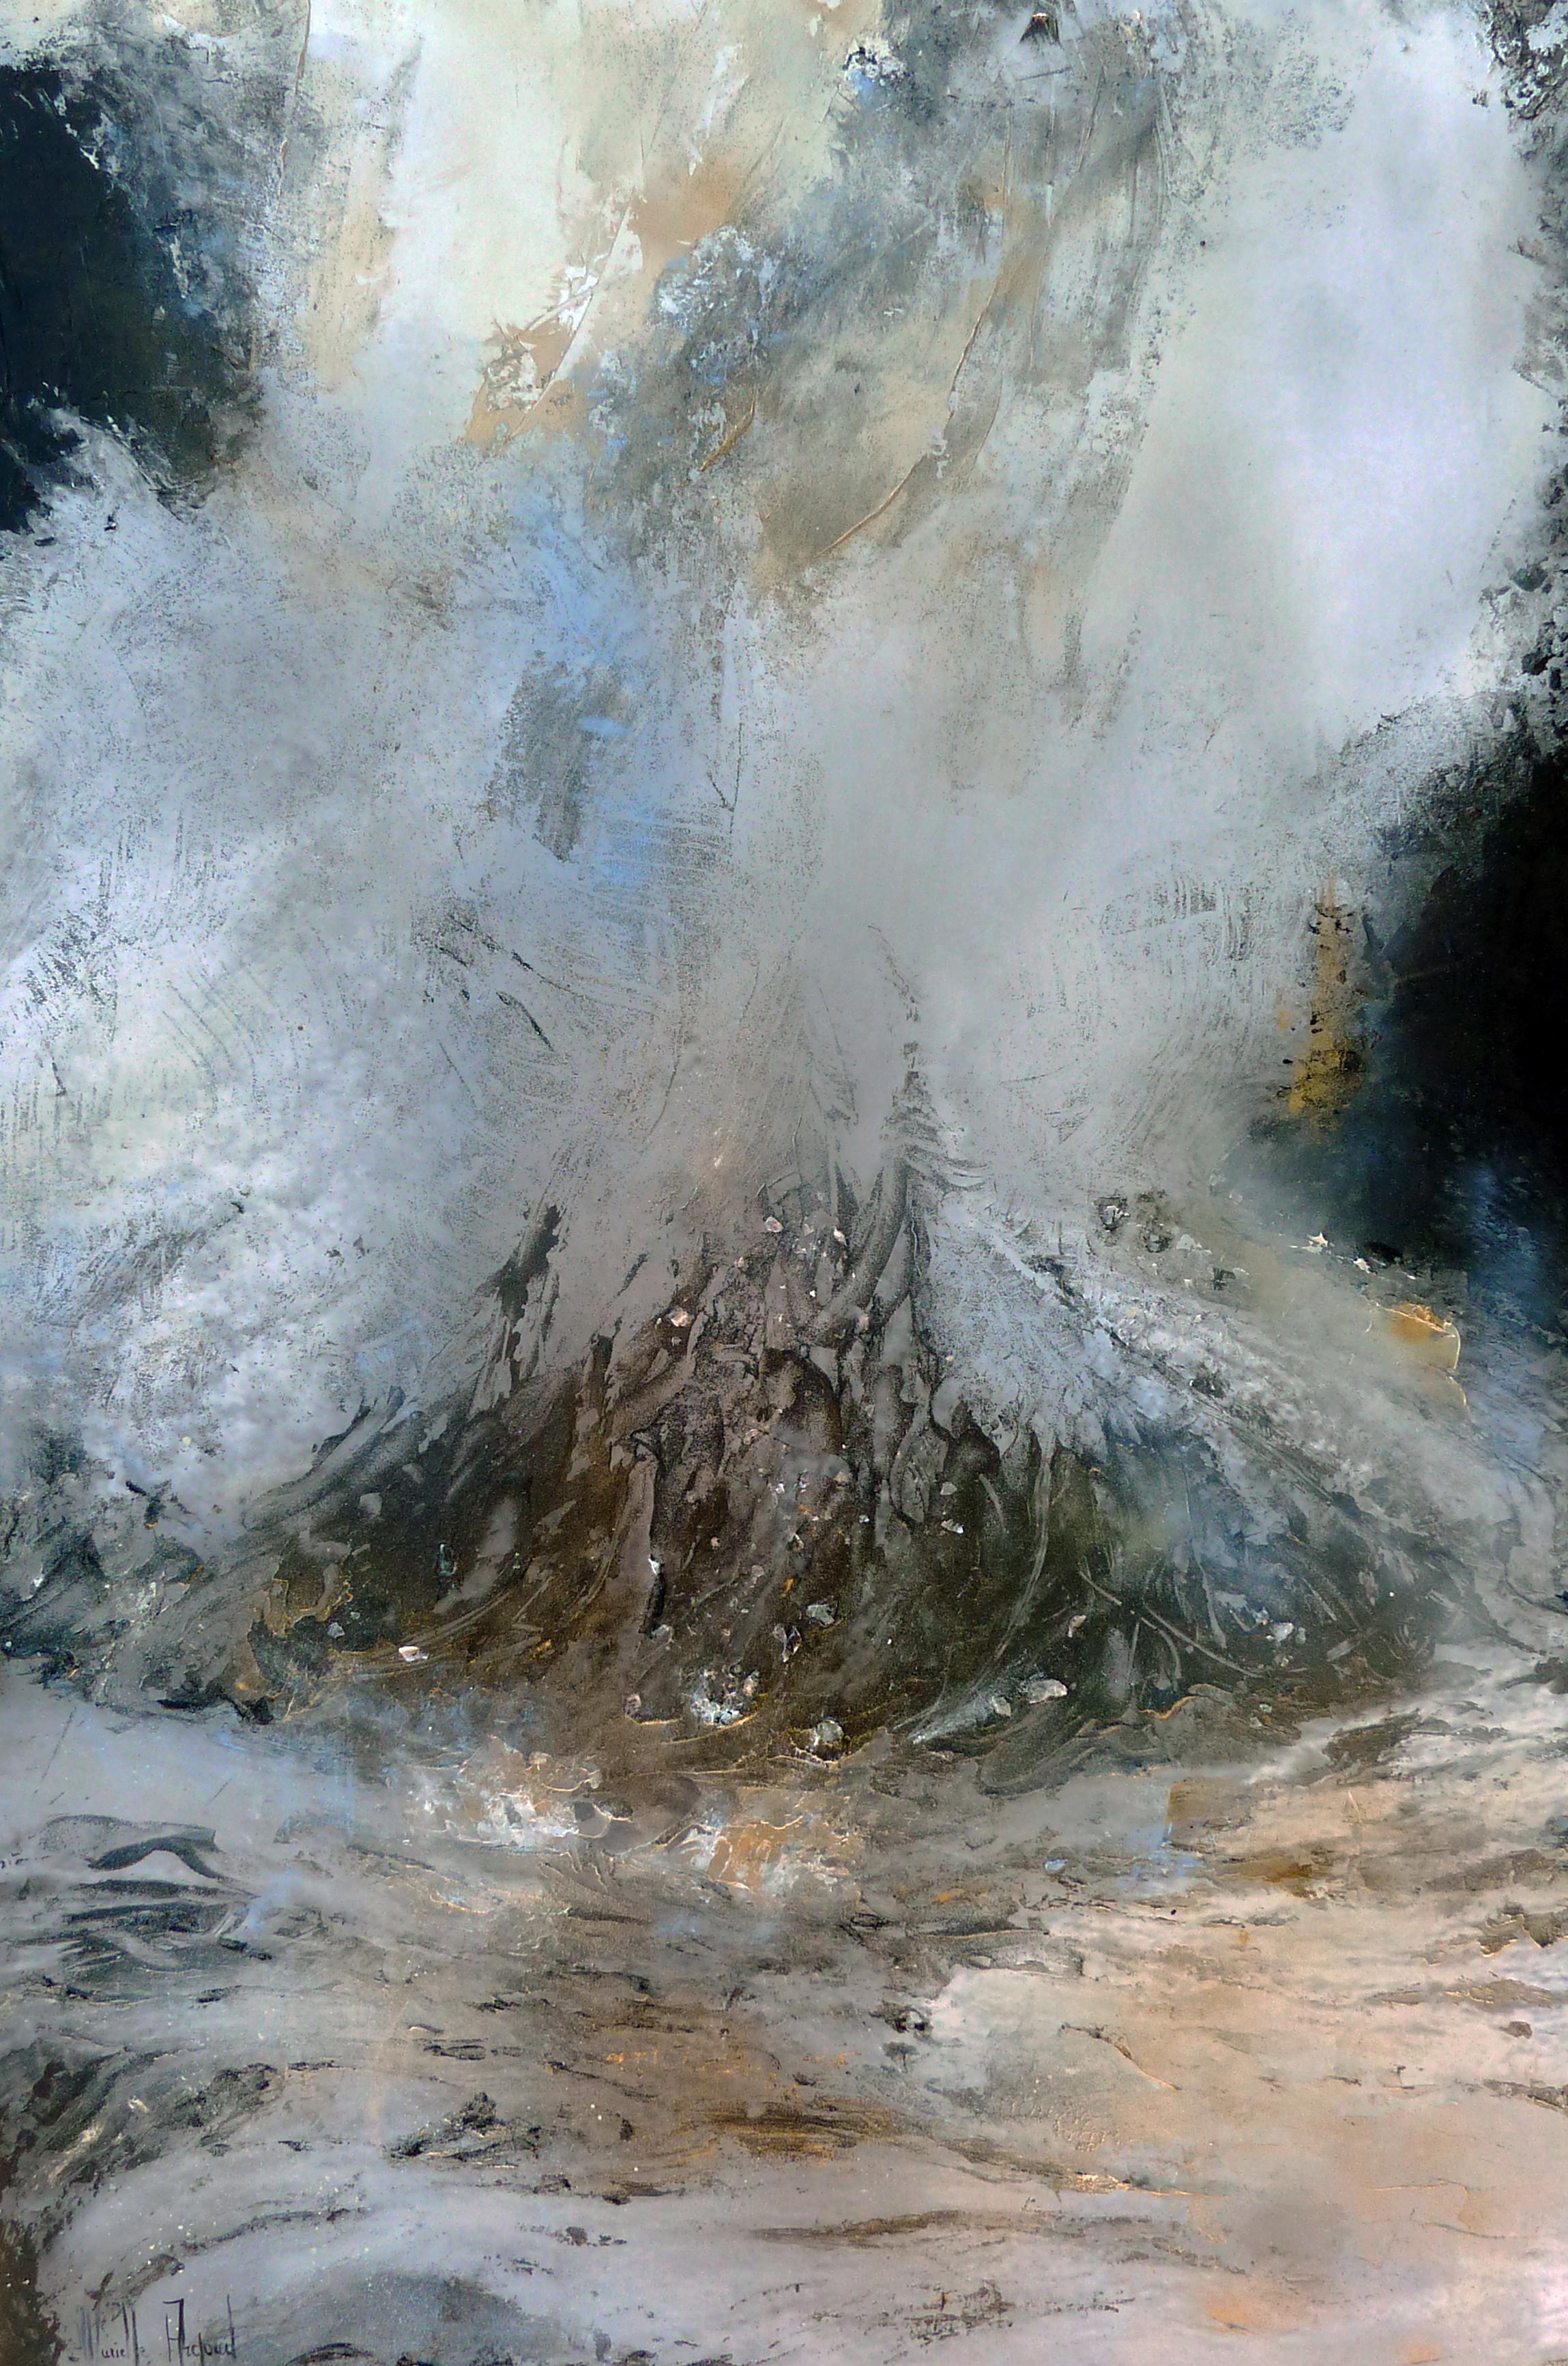 Französische Contemporary Art von Murielle Argoud - The Human Soul is Like Water... Goethe